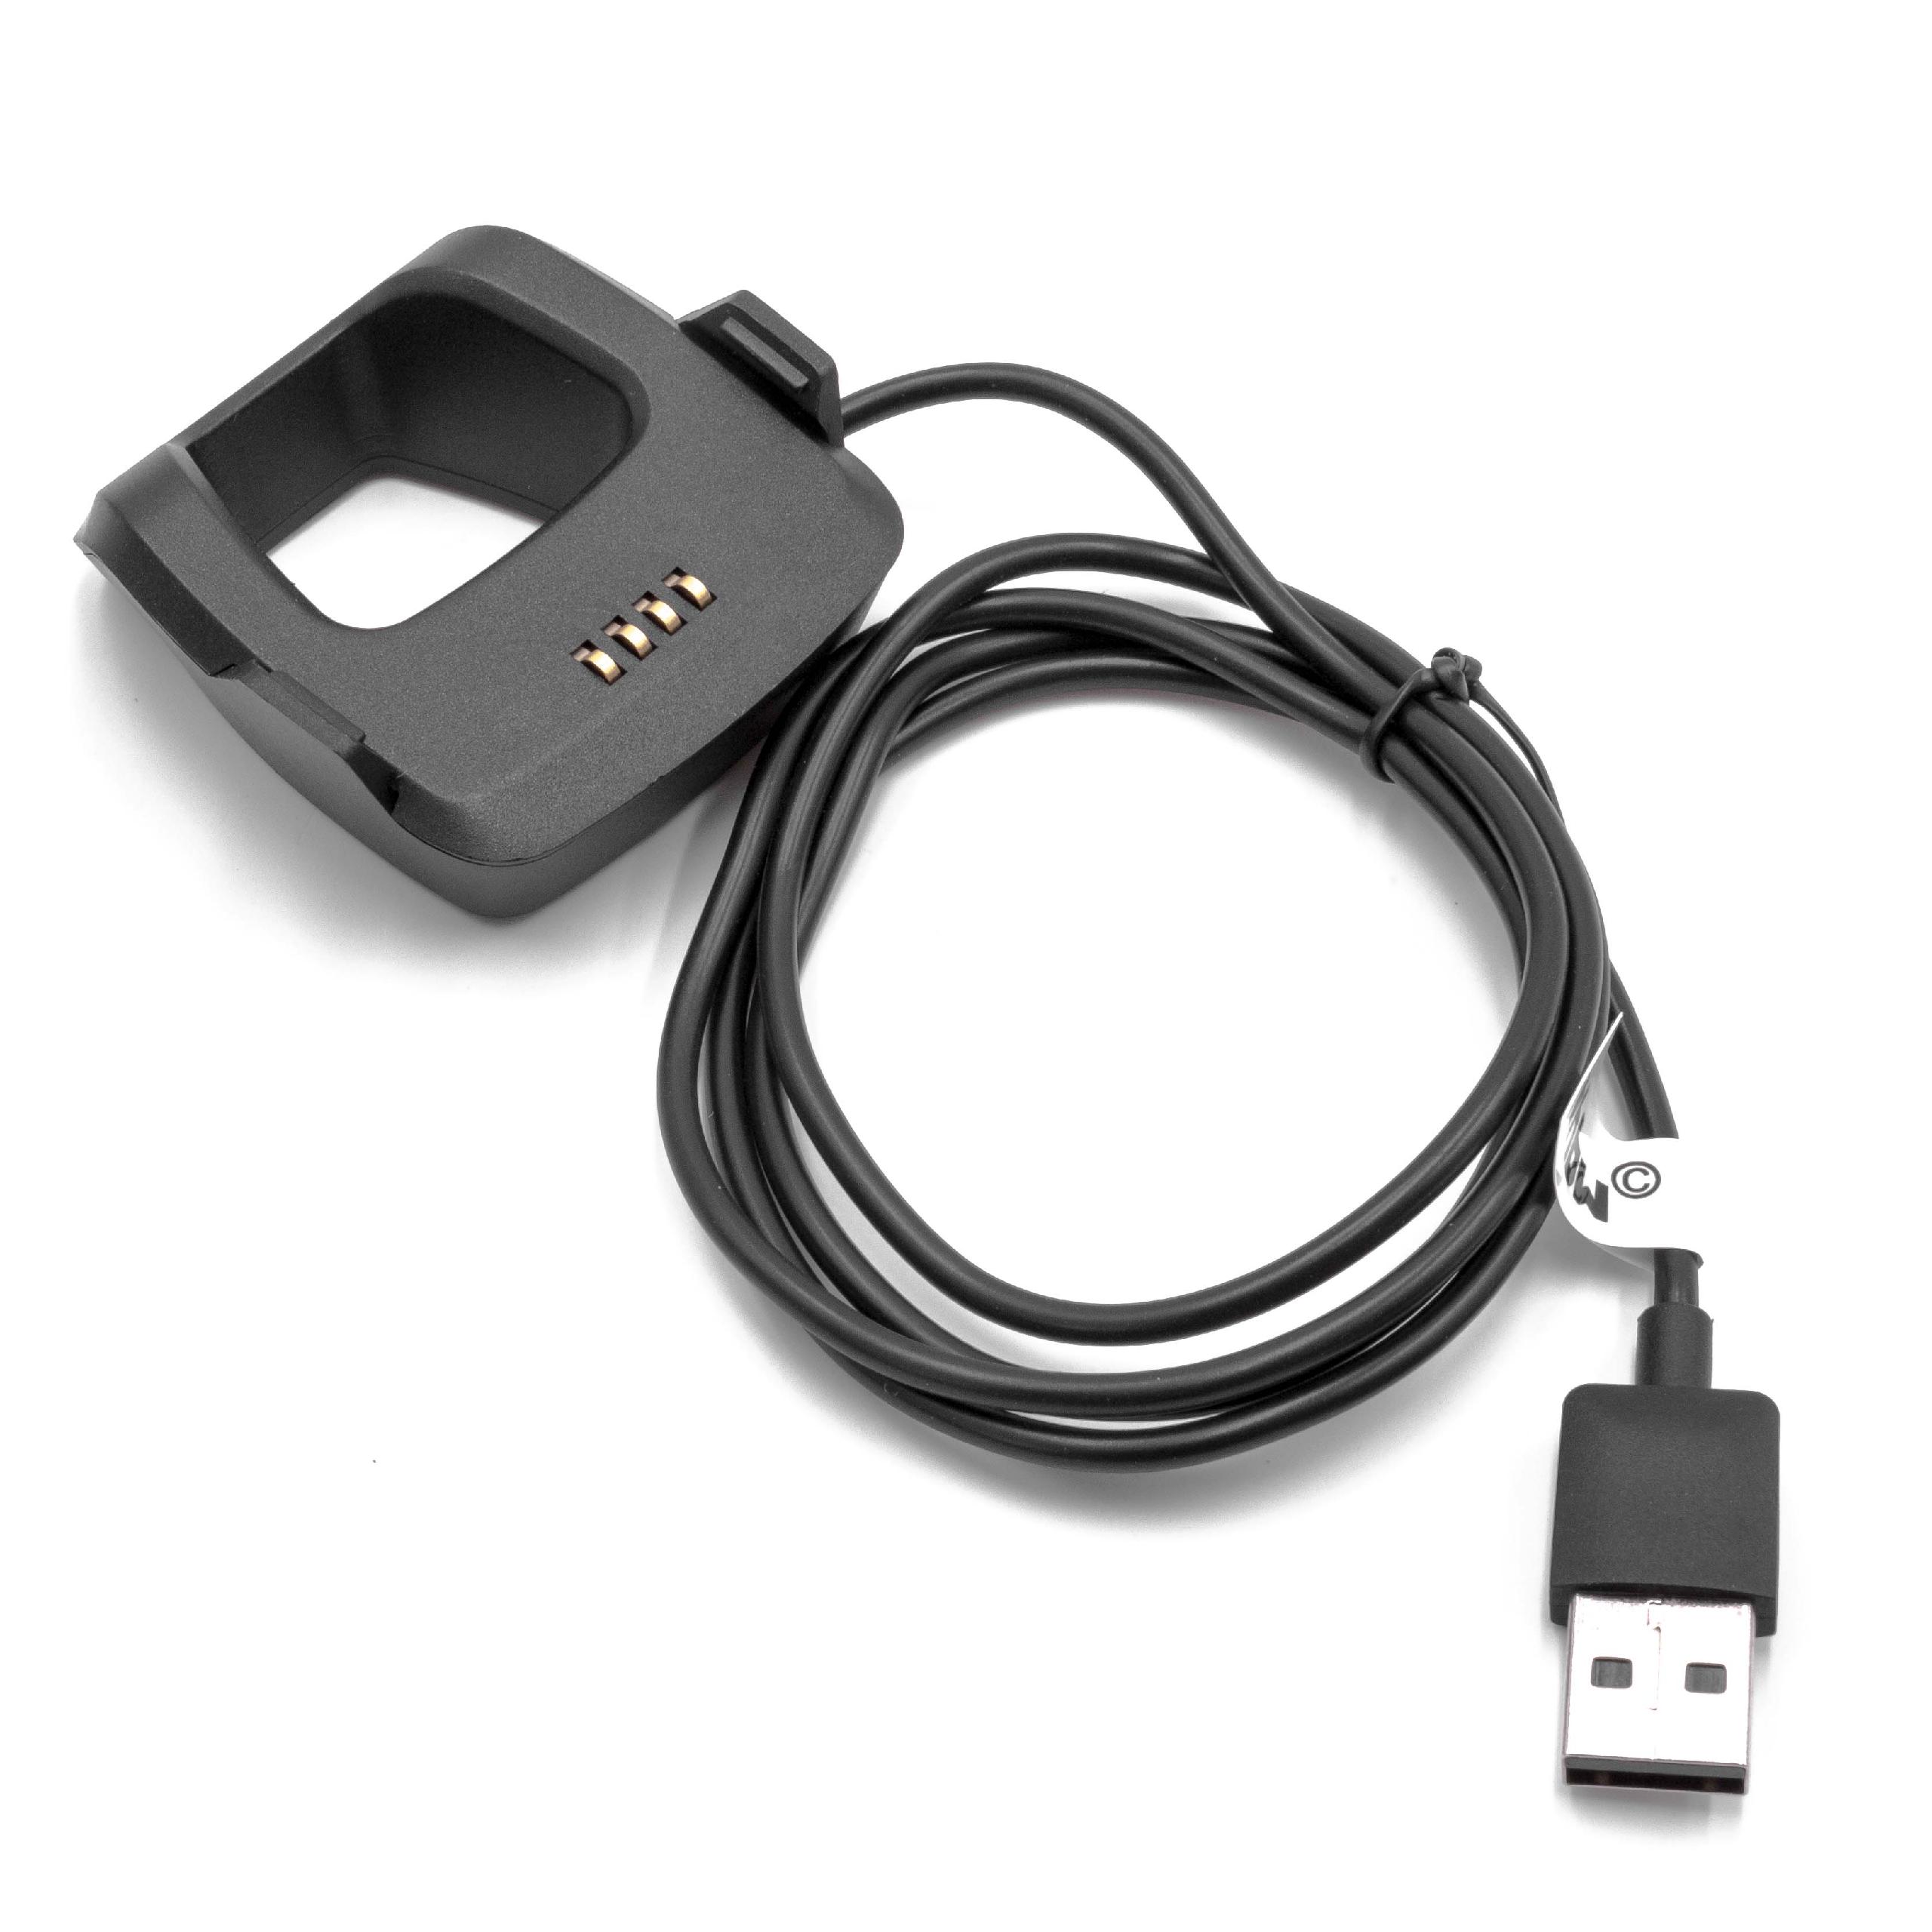 Cable de carga USB para smartwatch Garmin Forerunner 205, 305 - negro 95 cm